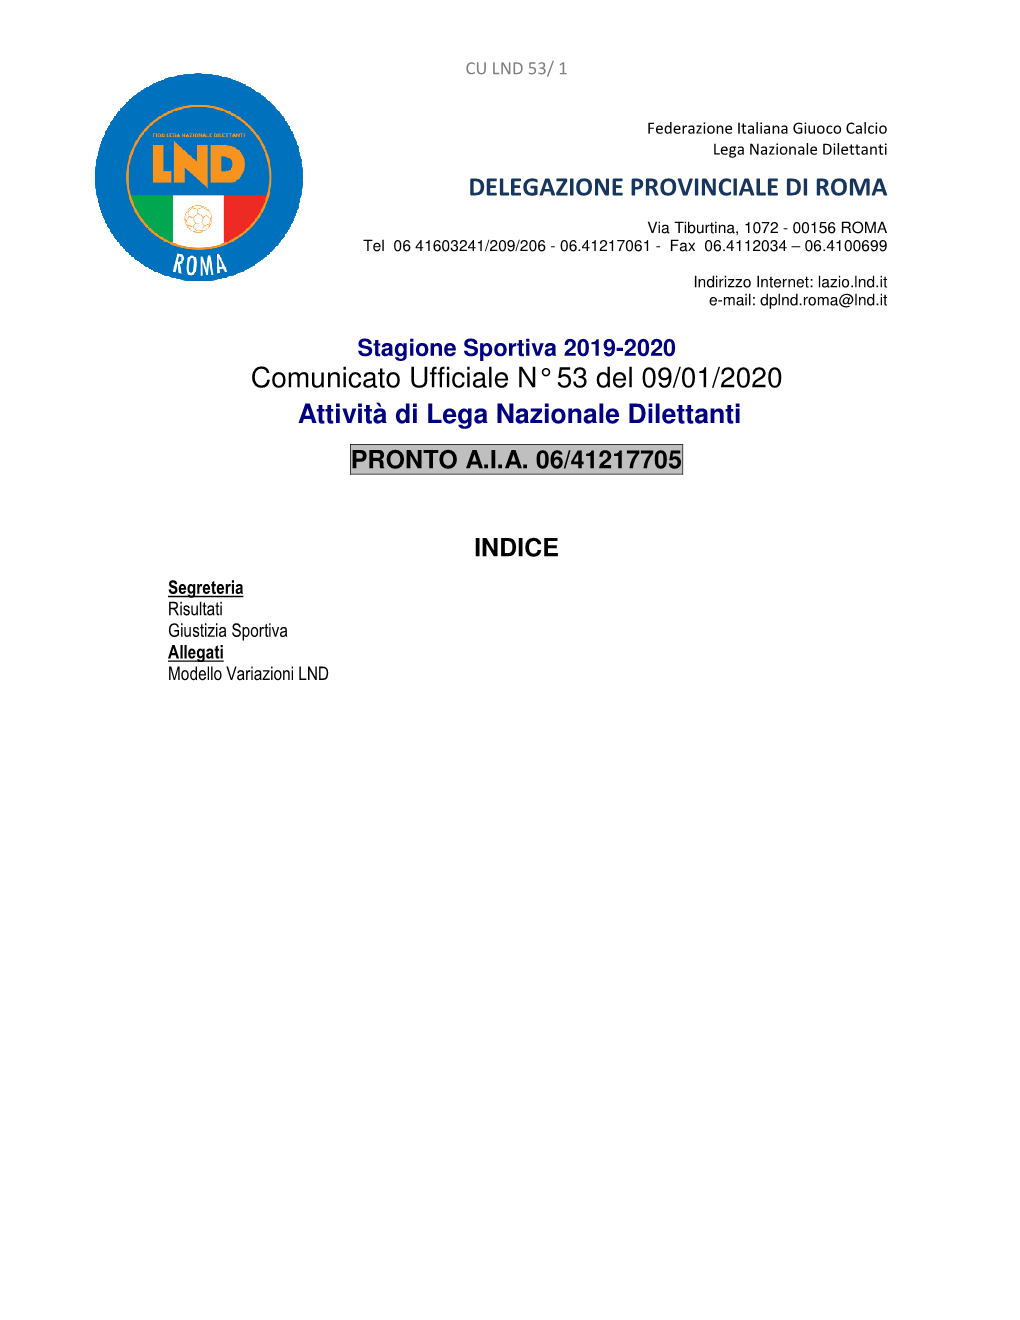 Comunicato Ufficiale N° 53 Del 09/01/2020 Attività Di Lega Nazionale Dilettanti PRONTO A.I.A